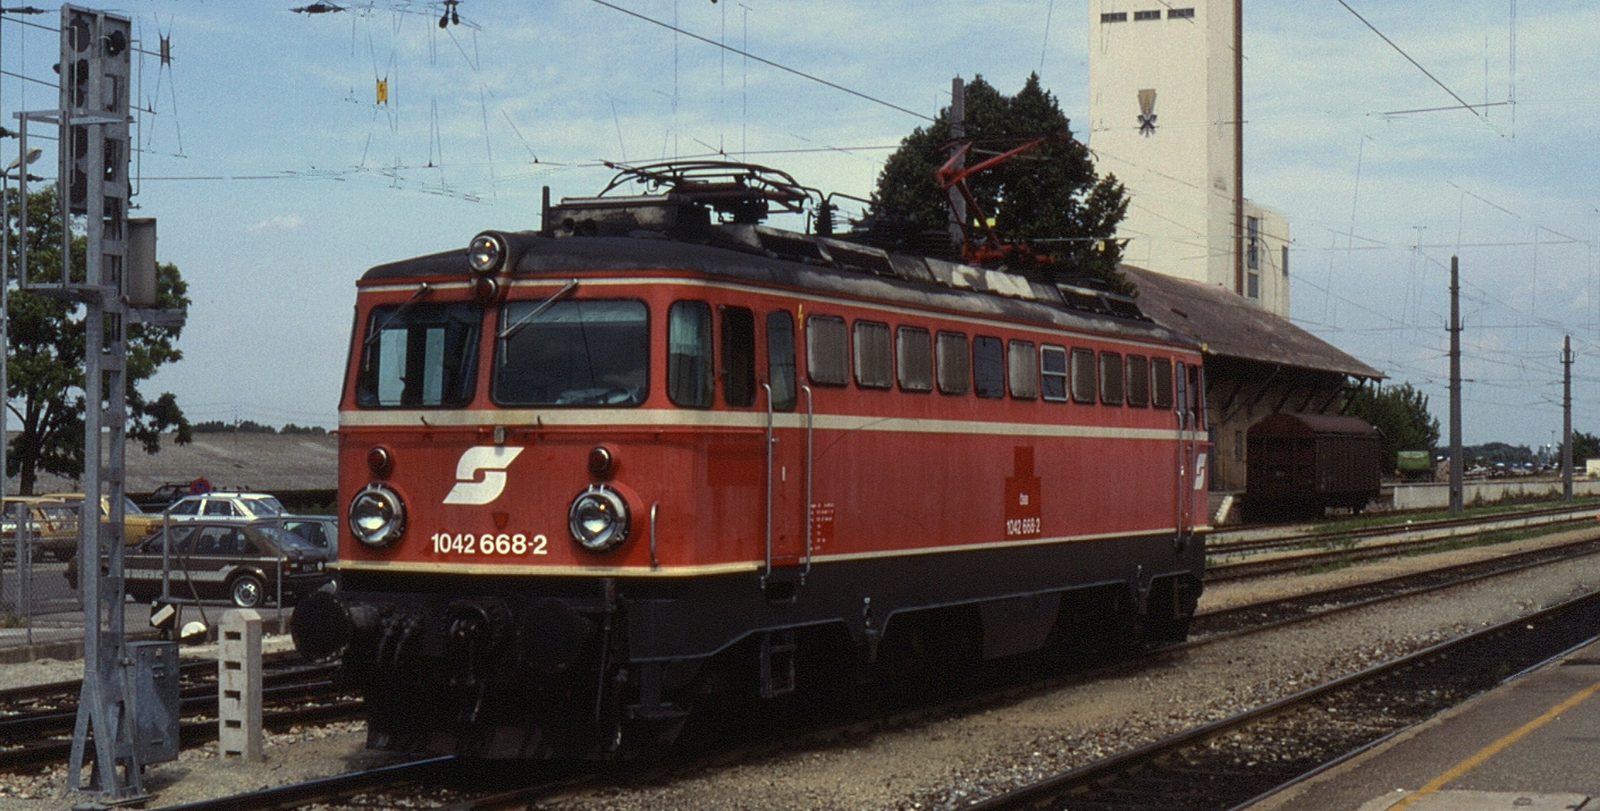 1042.668 in August 1988 in Gänserndorf